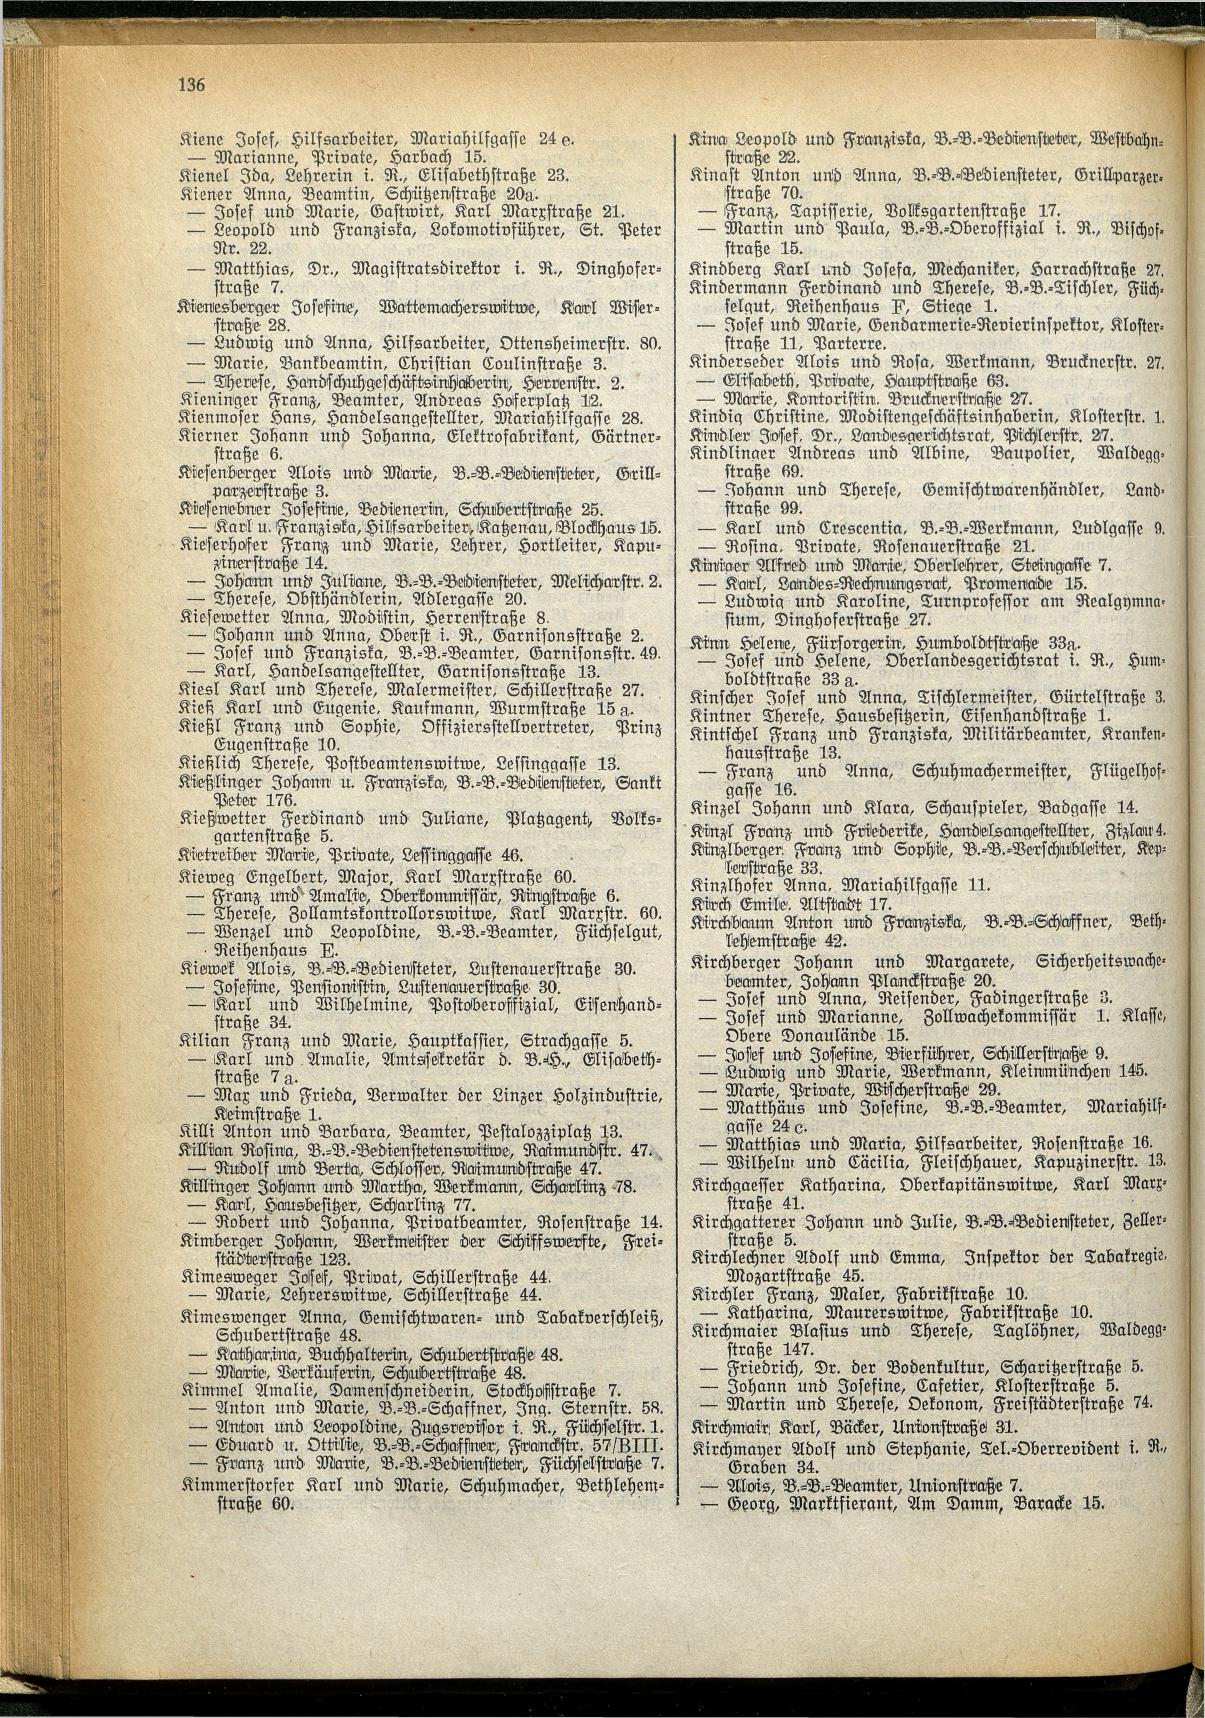 Amtliches Linzer Adreßbuch 1929 - Seite 158